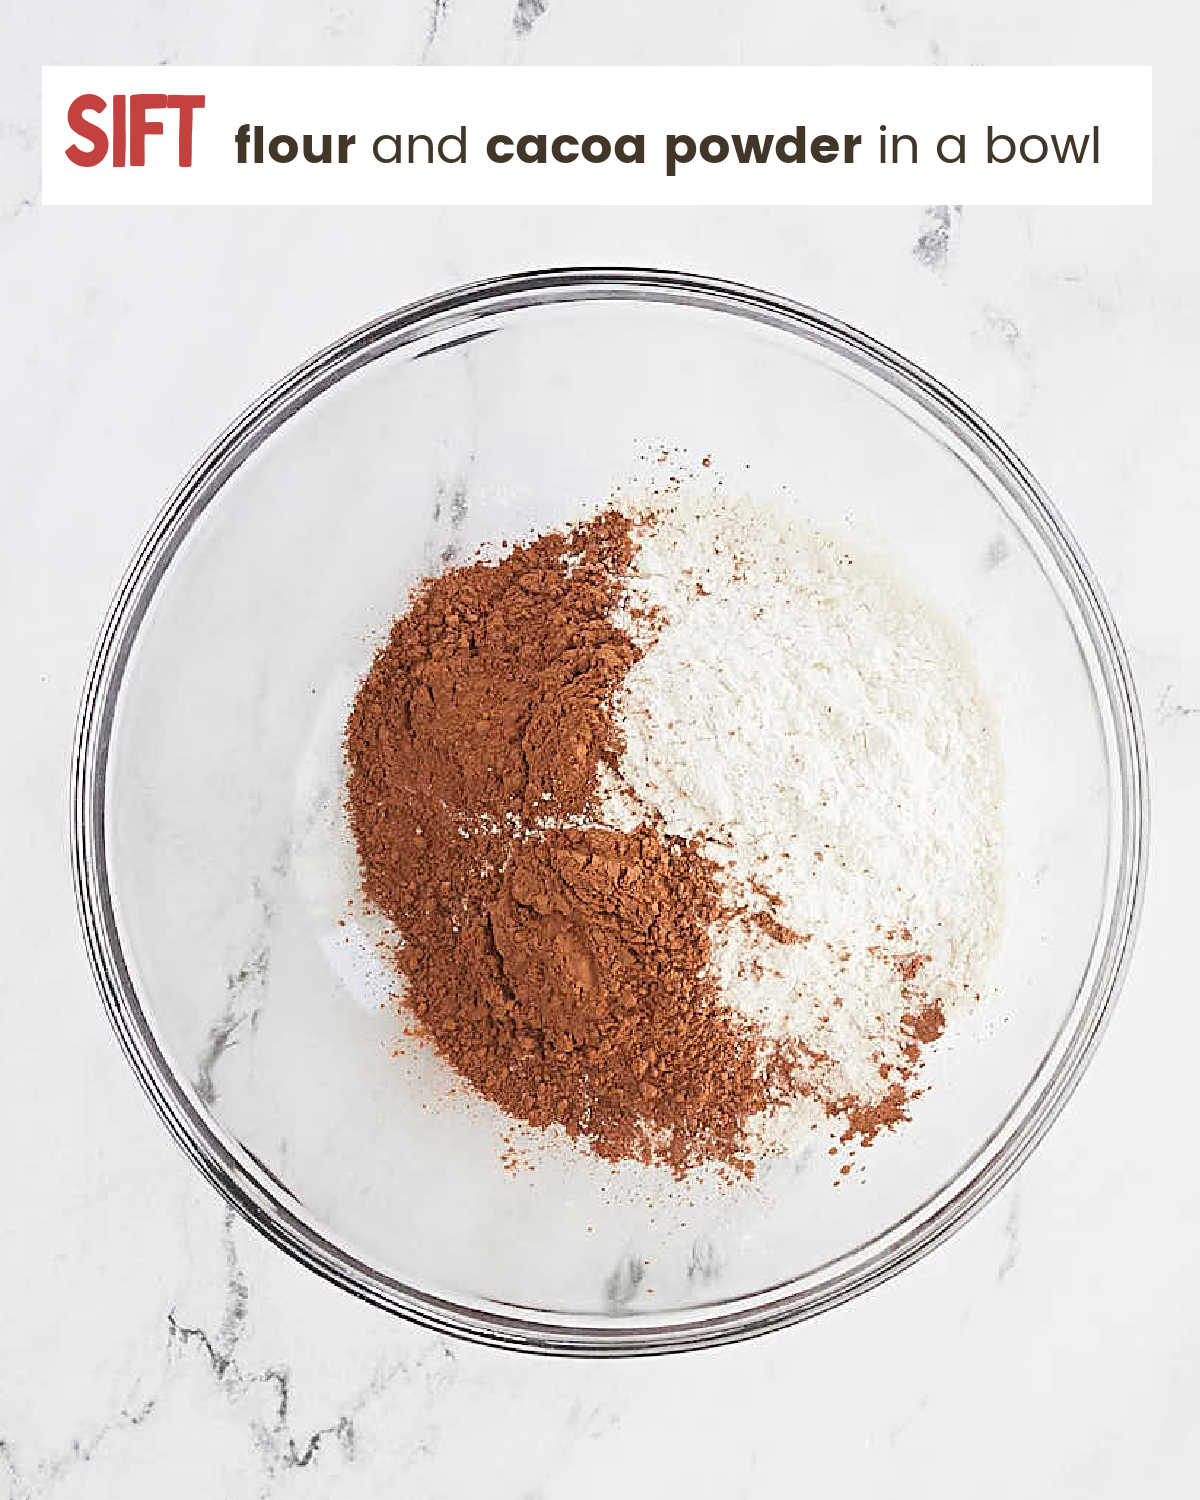 A bowl of flour and cacao powder.